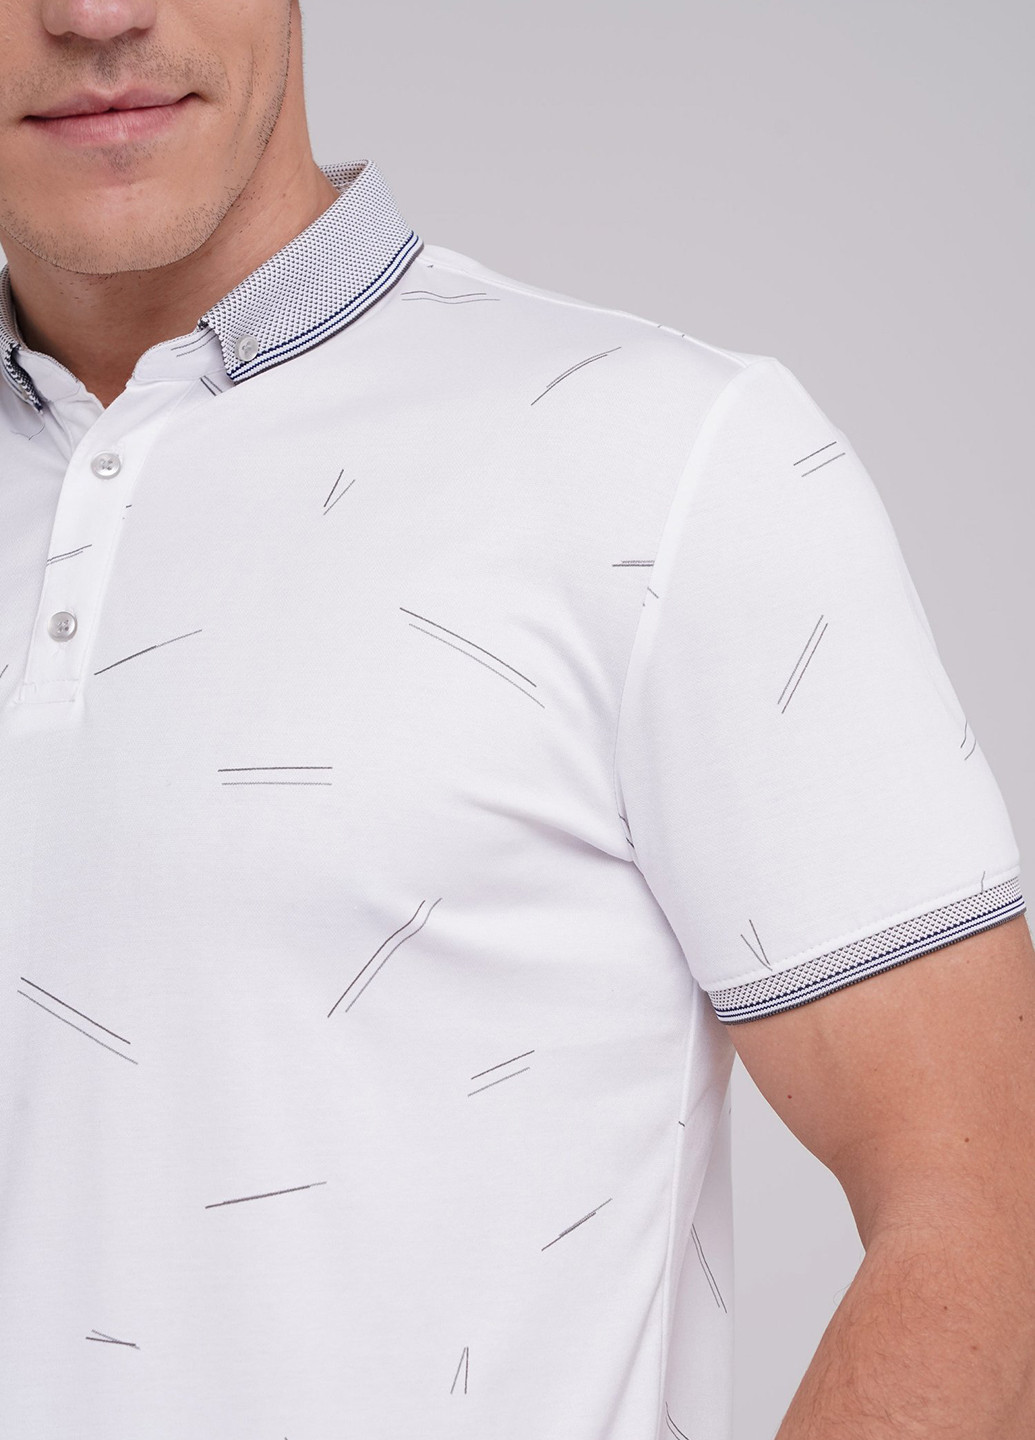 Белая футболка-поло для мужчин Trend Collection с абстрактным узором